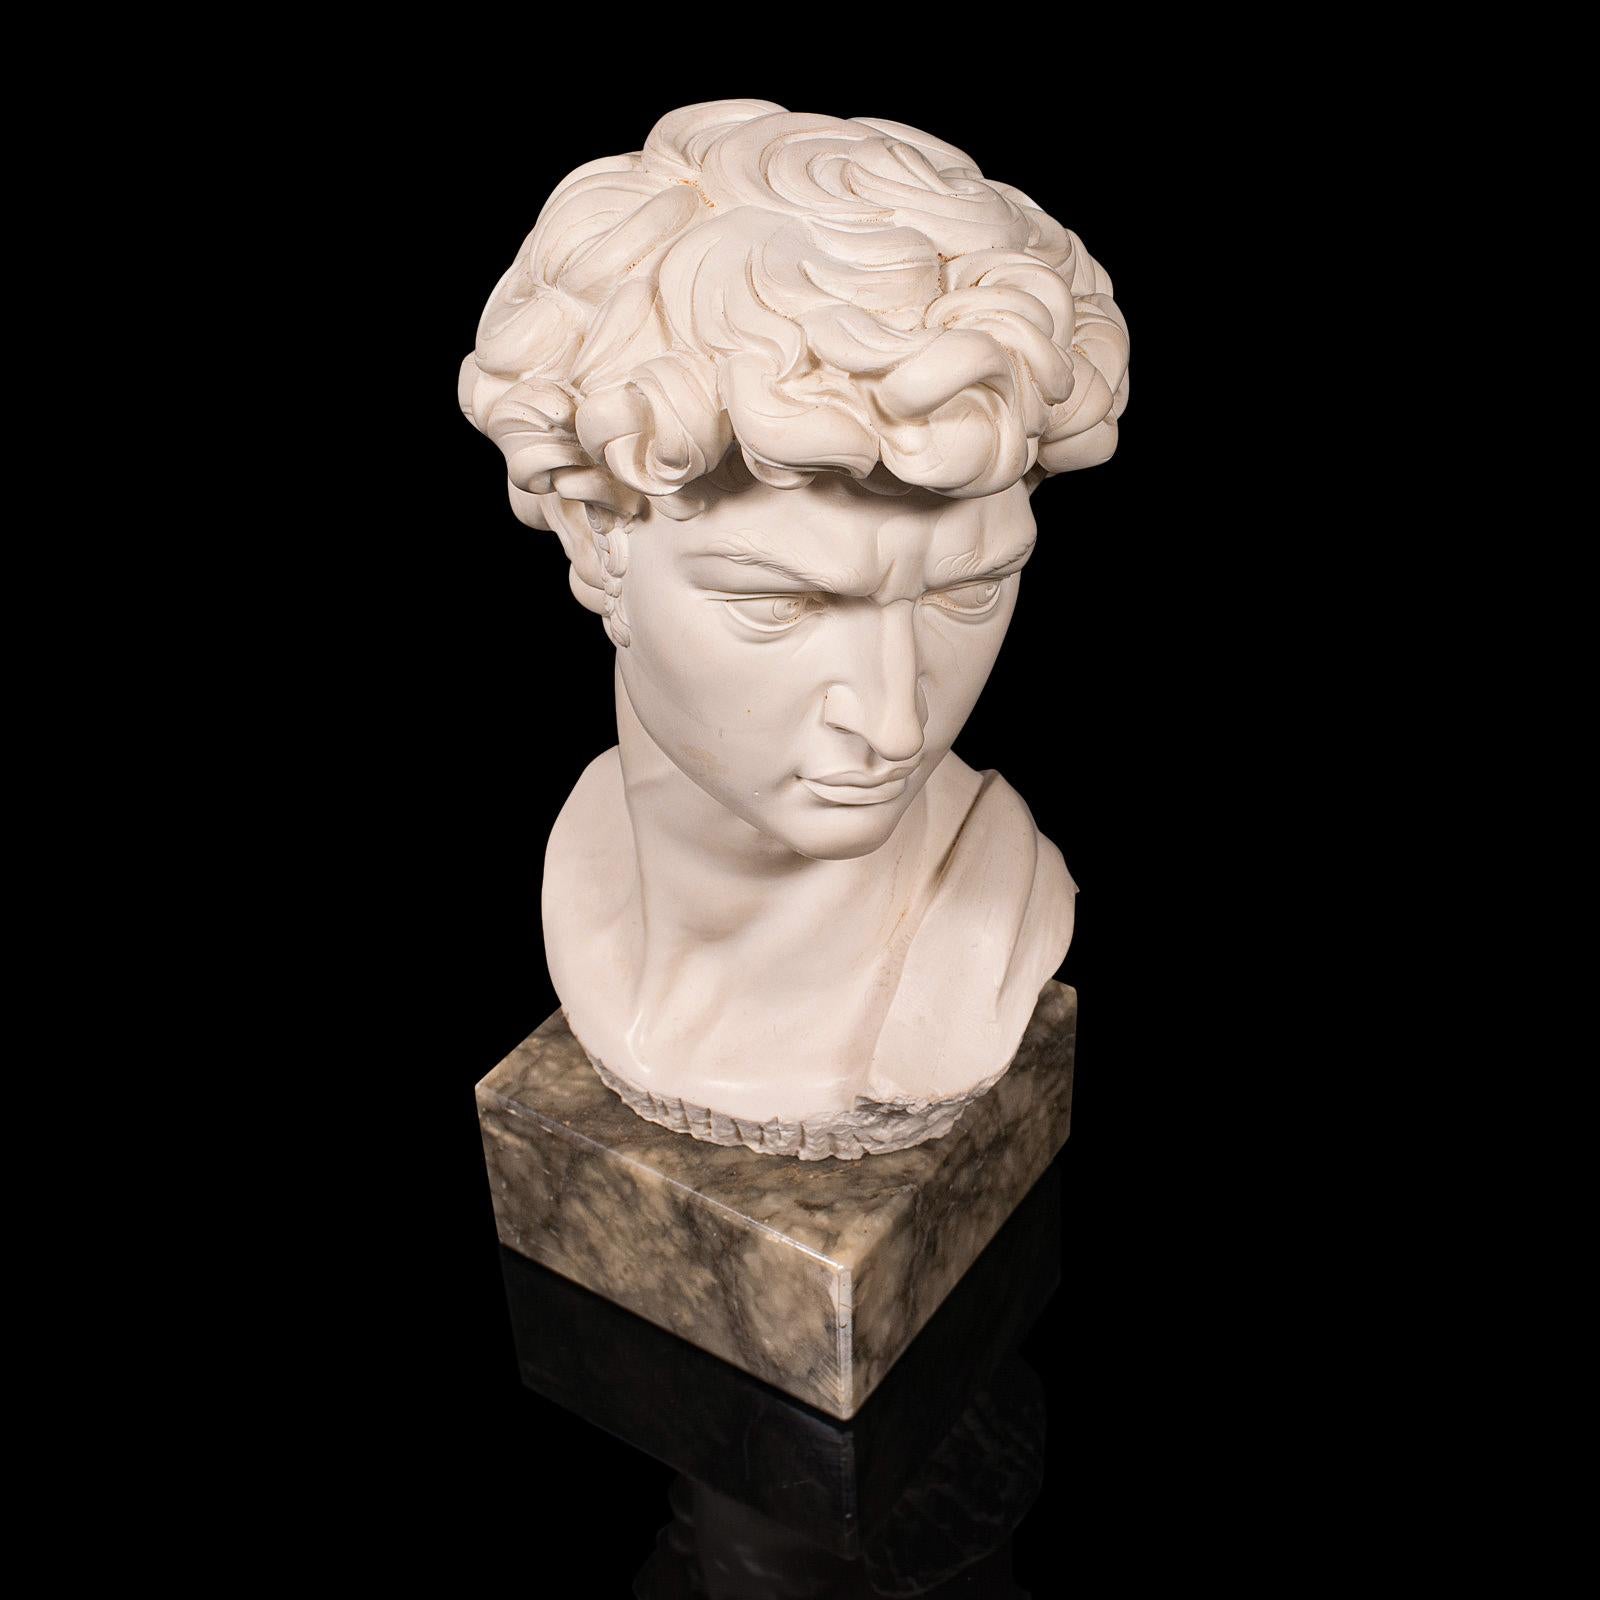 Vintage Portrait Bust, Italian, Marble Base, Statue, Michelangelo, David, Decor 1